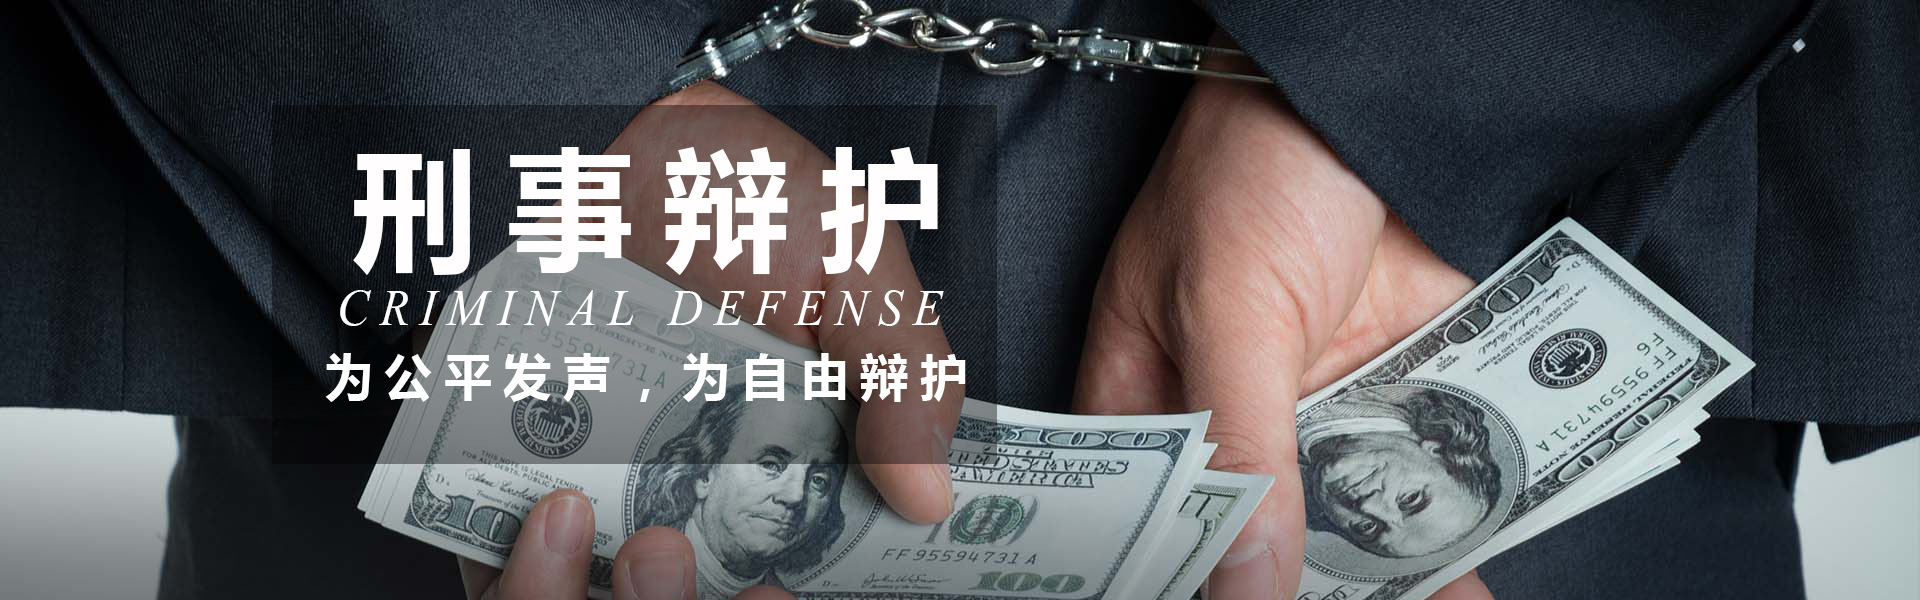 重庆刑事辩护律师 为公平发声 为自由辩护